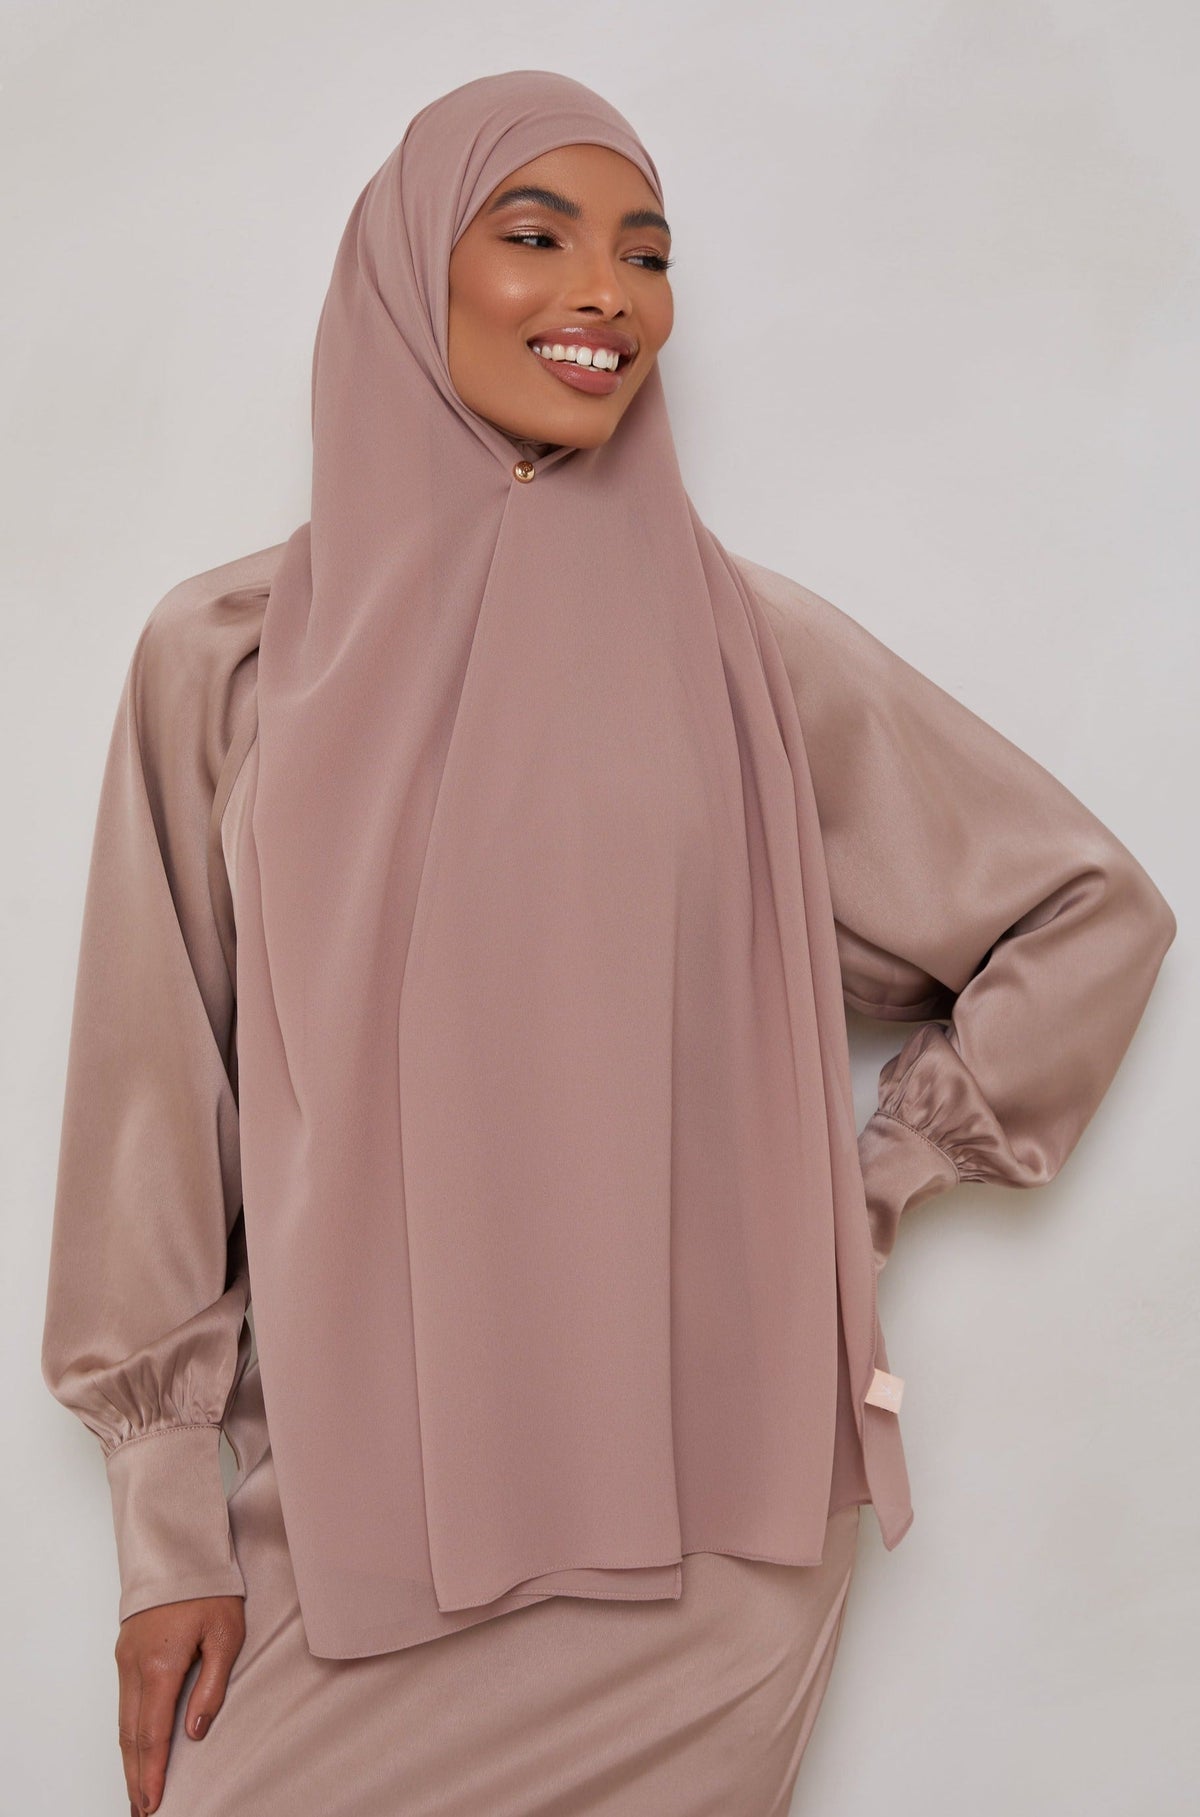 Essential Chiffon Hijab - Mink Scarves & Shawls epschoolboard 